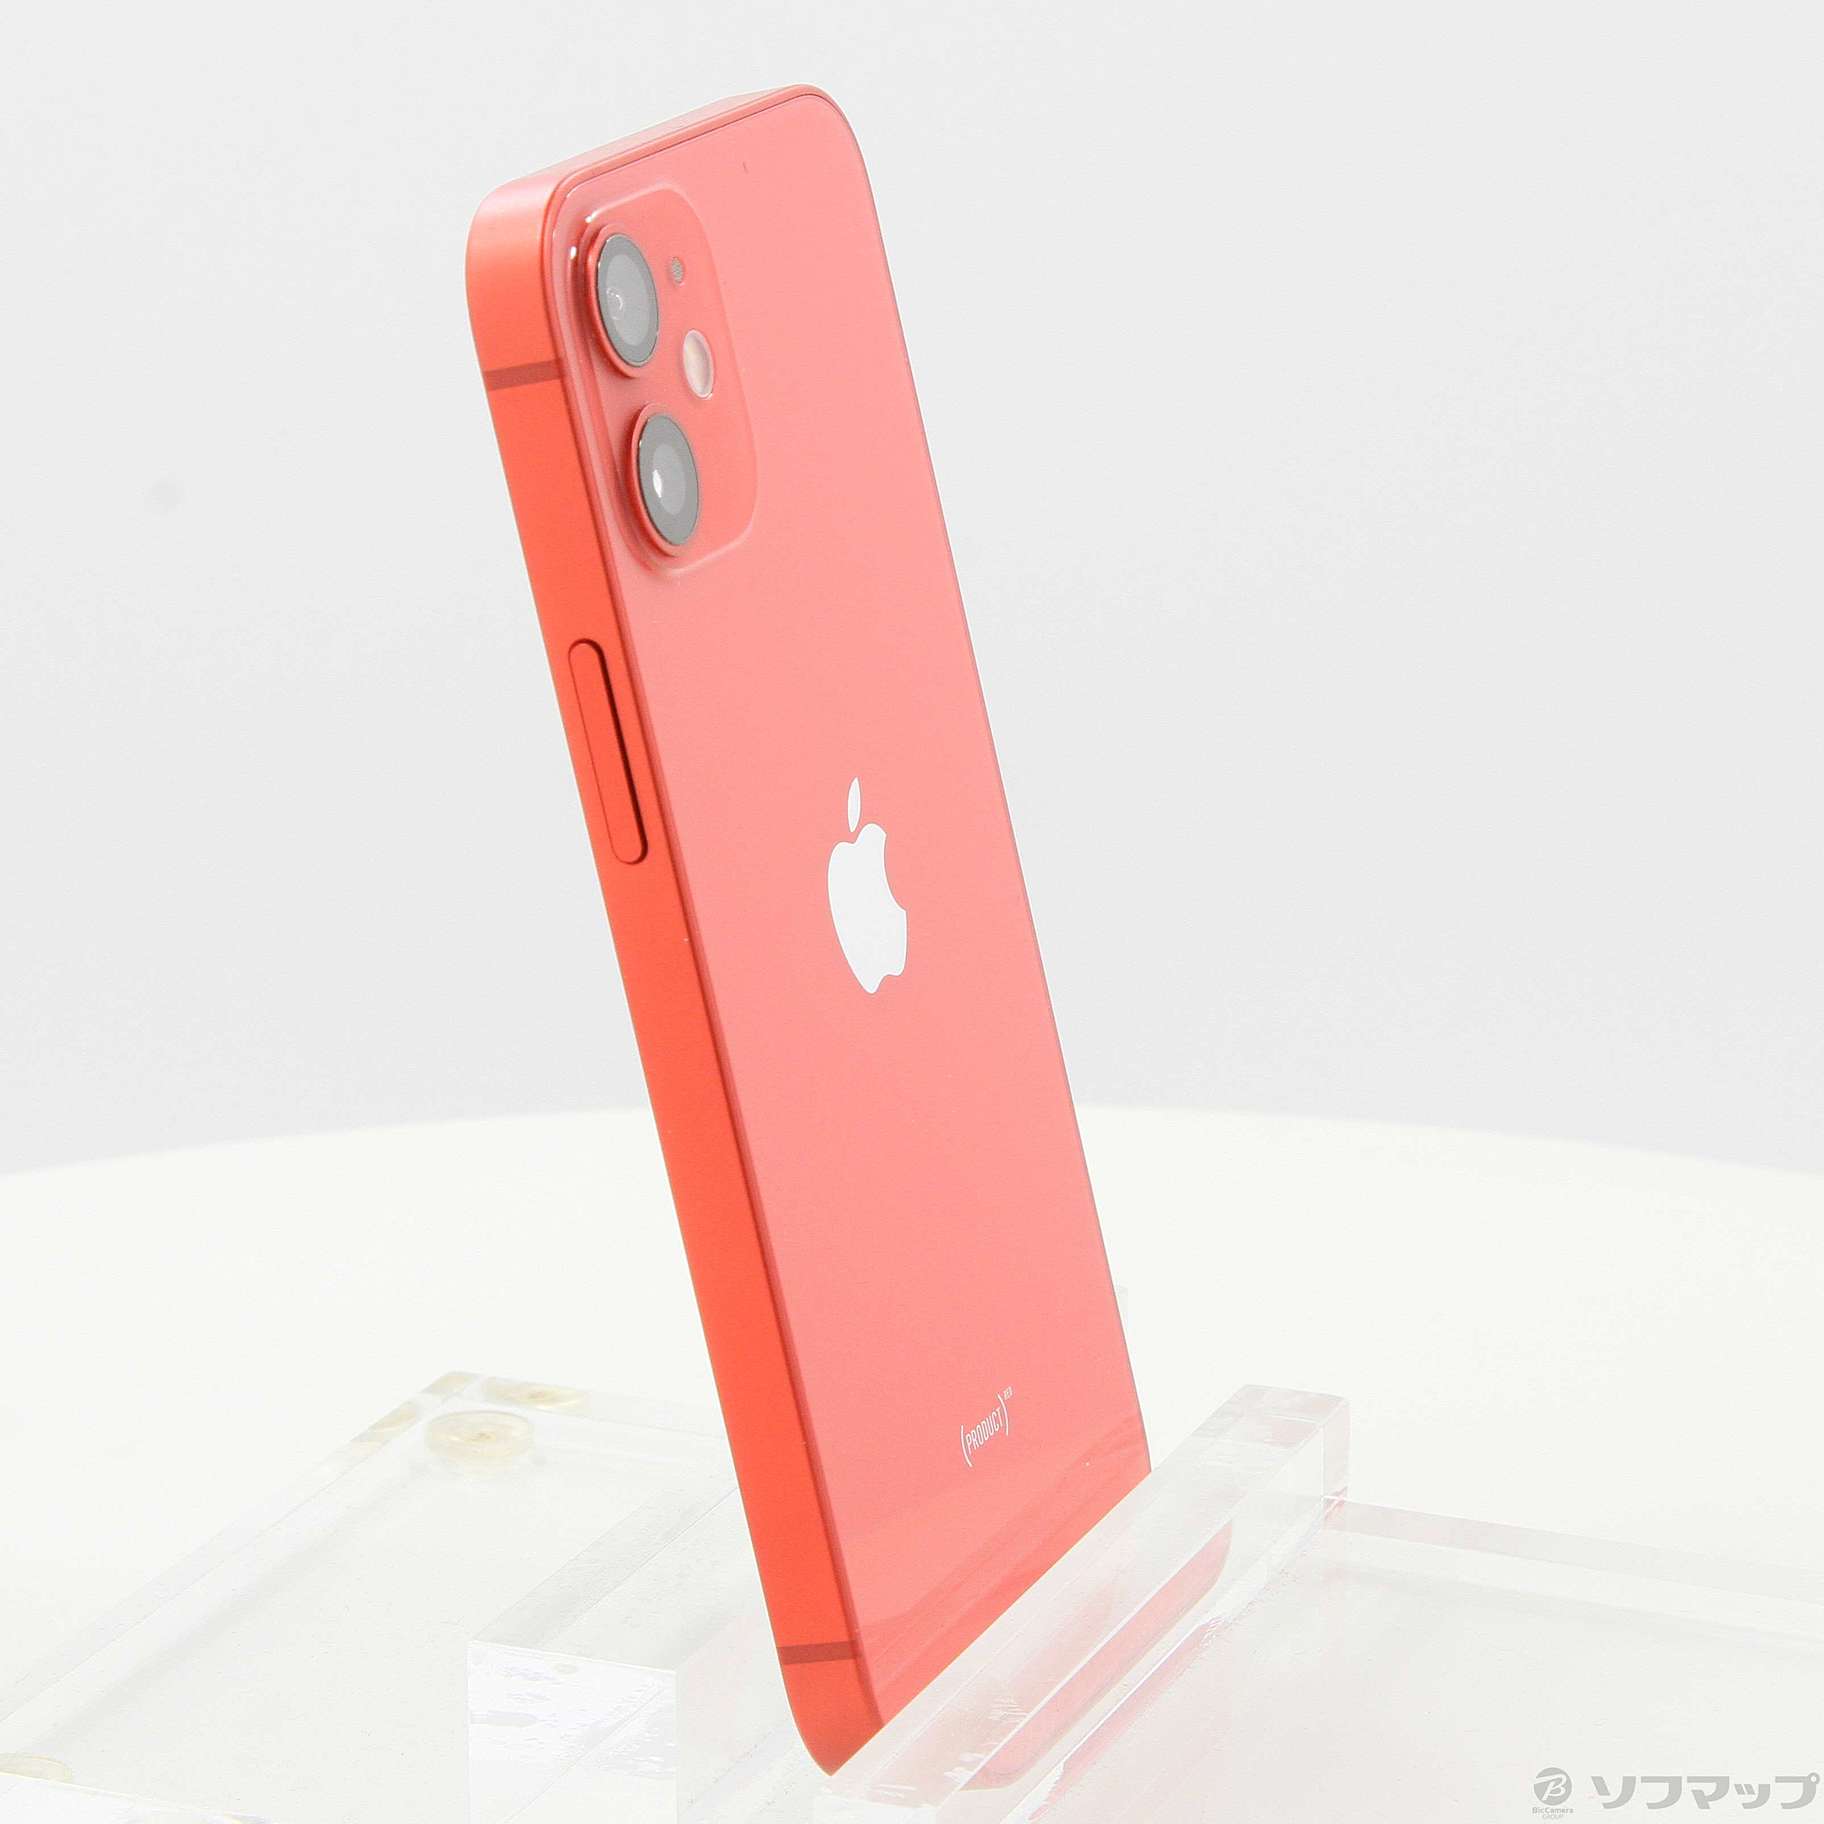 16,340円iPhone 12 mini Product(RED) レッド SIMフリー